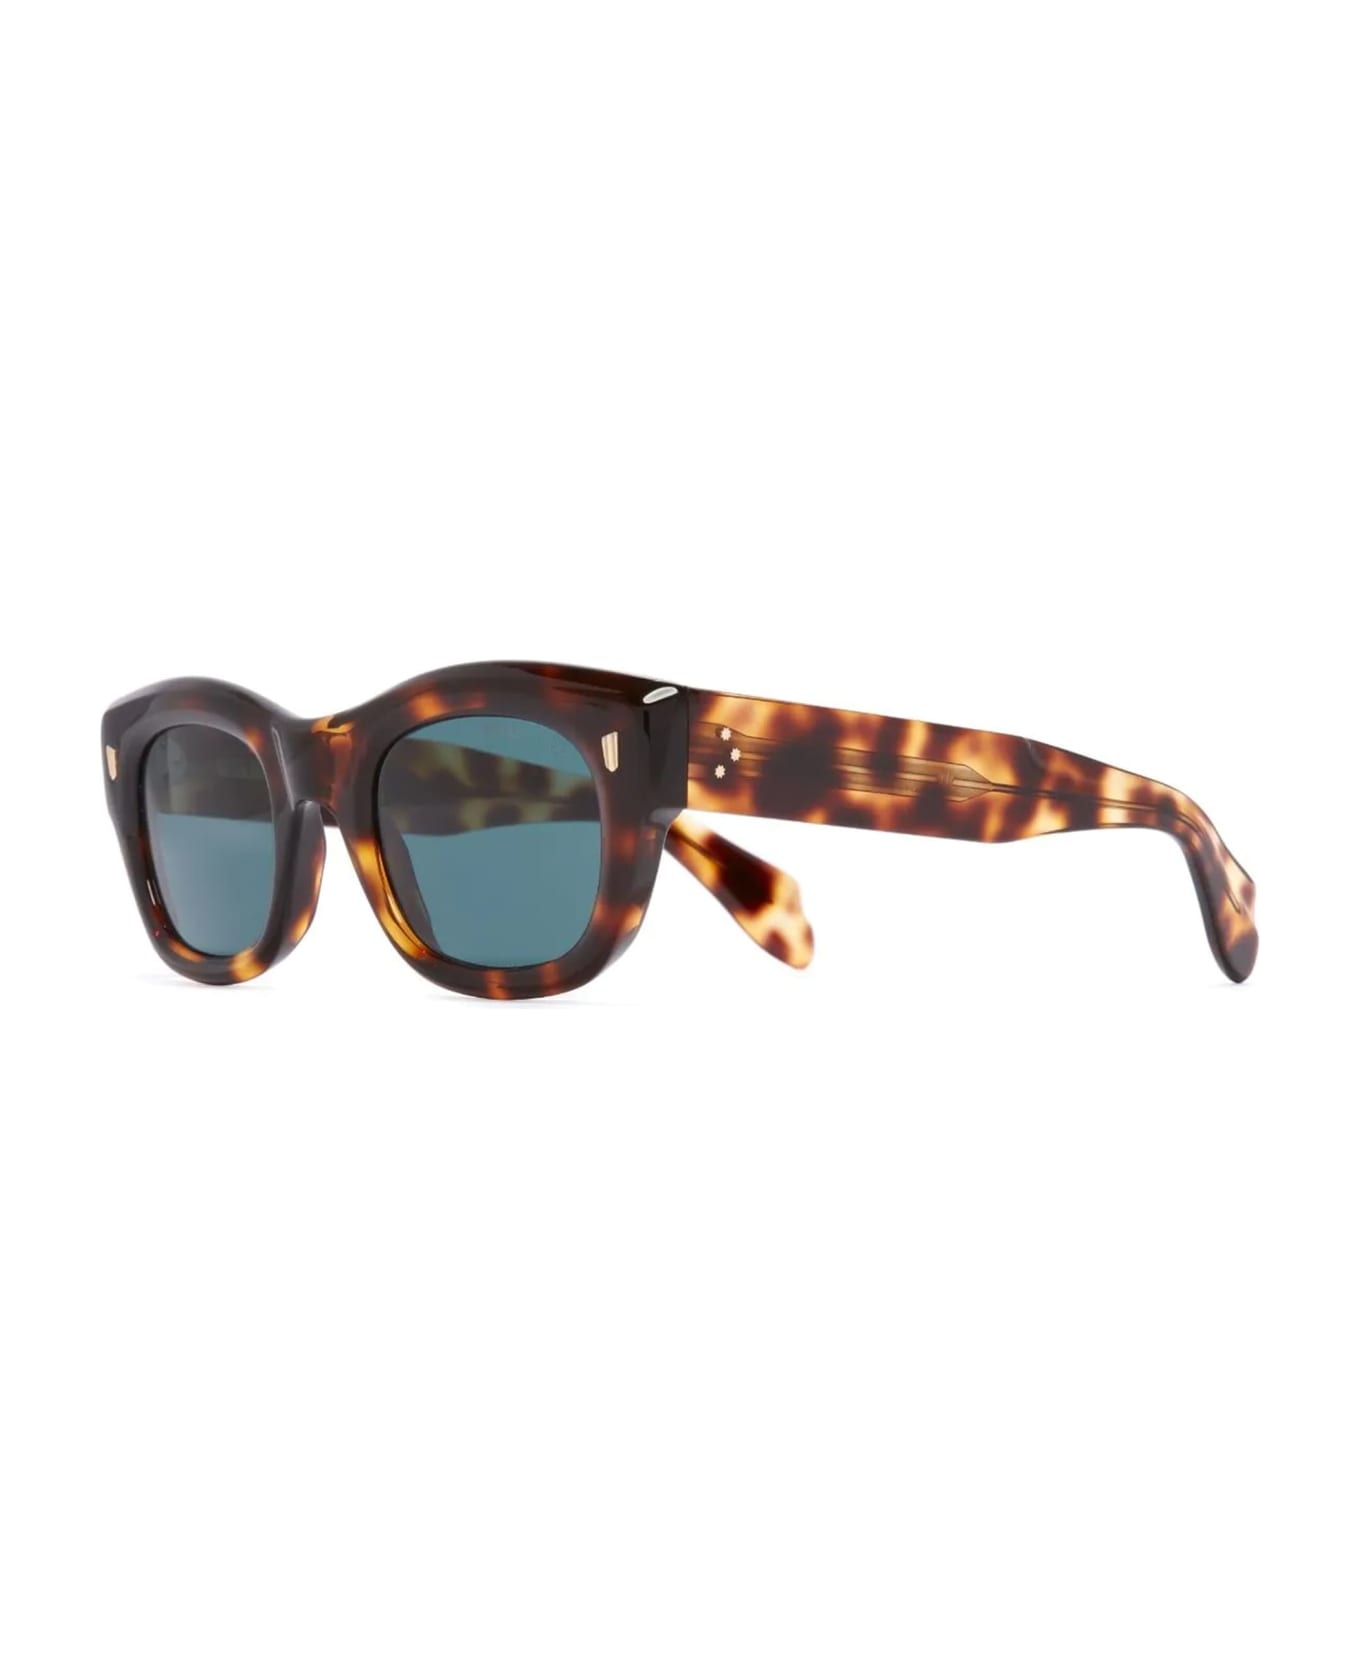 Cutler and Gross 9261 / Old Brown Havana Sunglasses - Havana